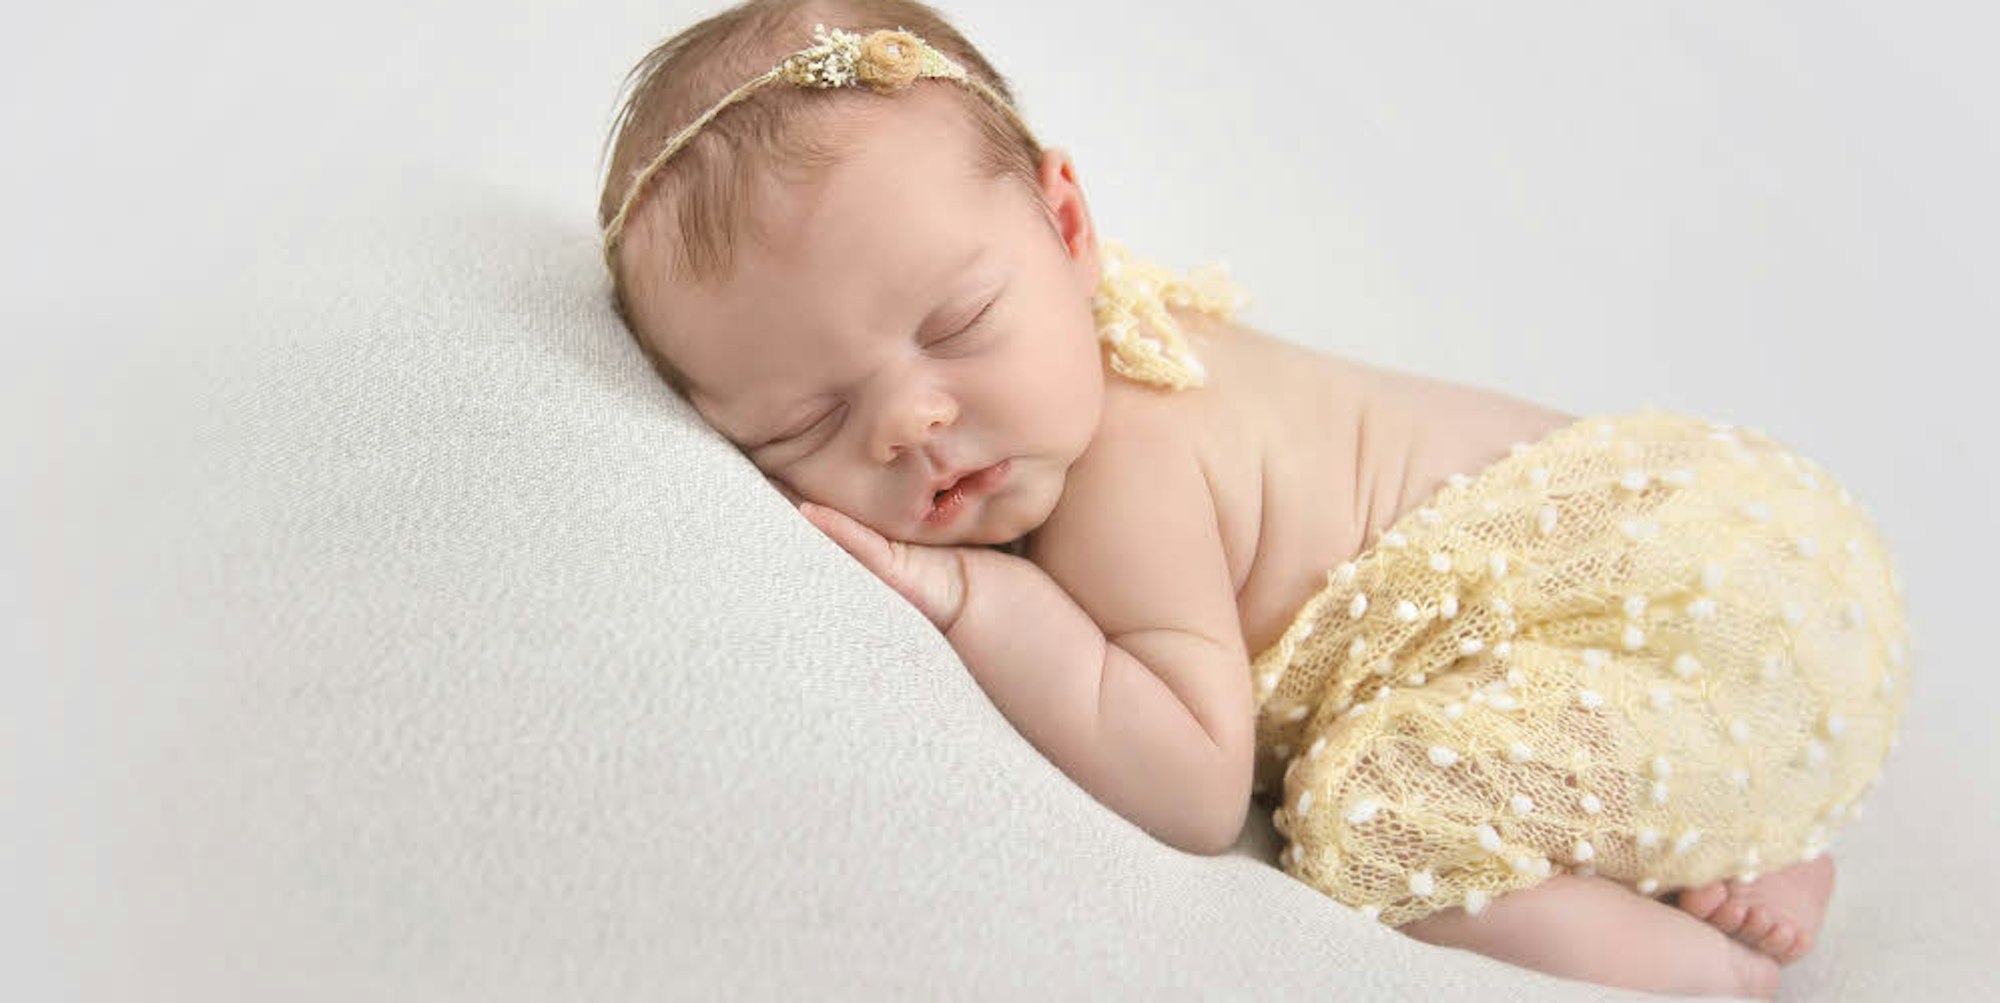 Ein Neugeborenen-Shooting sollte zwischen dem 5. und 10. Lebenstag des Babys stattfinden, meint Fotografin Barbara Schuckmann.